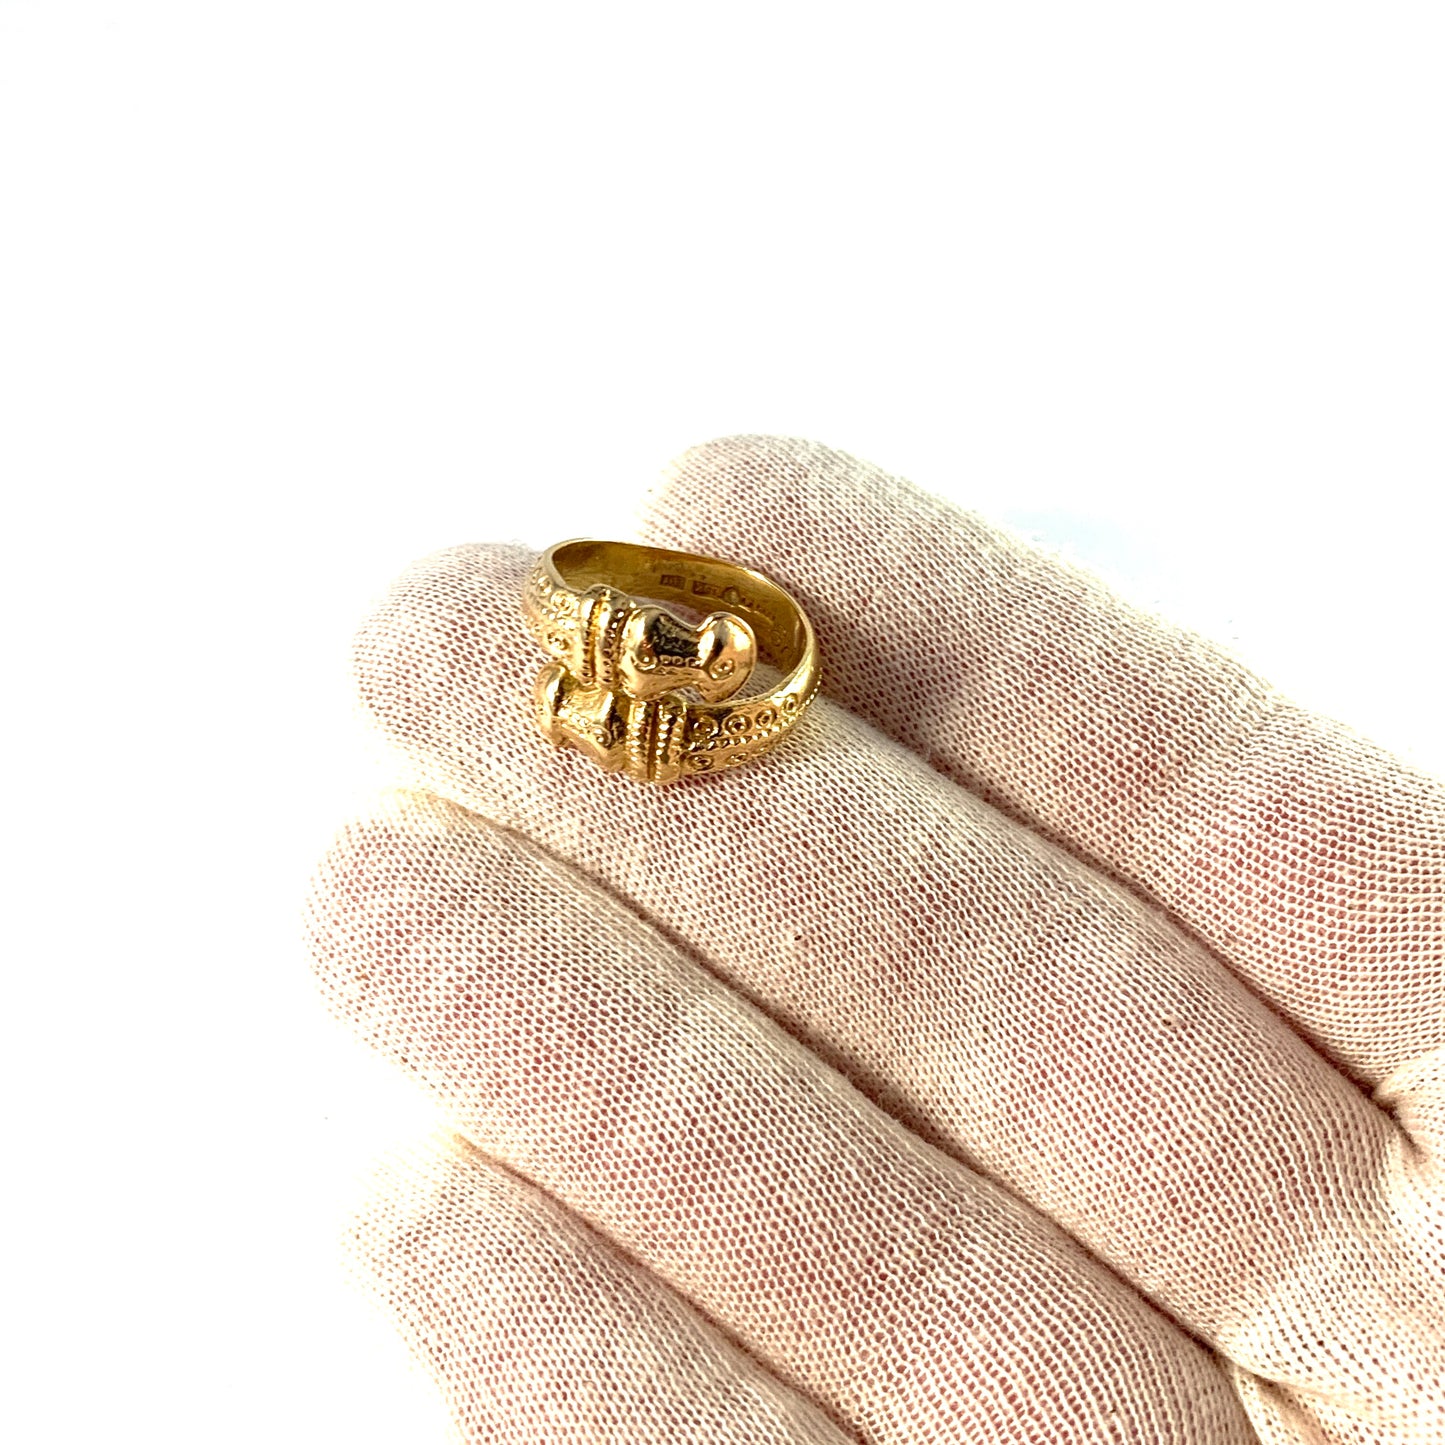 Bengt Hallberg, Sweden. Vintage Viking Copy 18k Gold Ring.